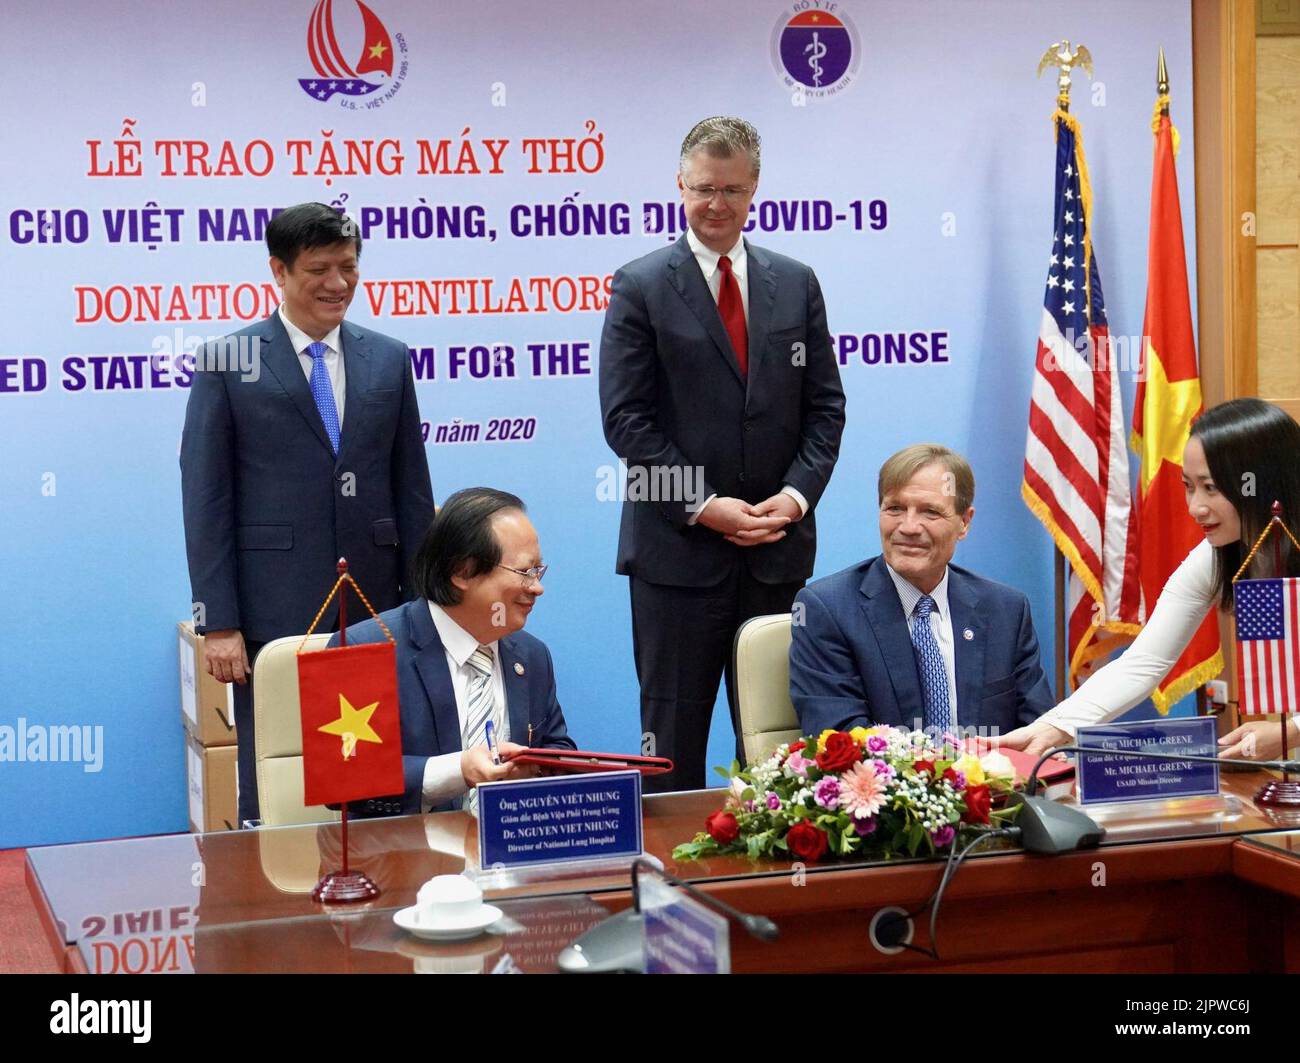 Gli Stati Uniti forniscono ventilatori al Vietnam per rispondere a COVID-19 - 50400217827 Foto Stock